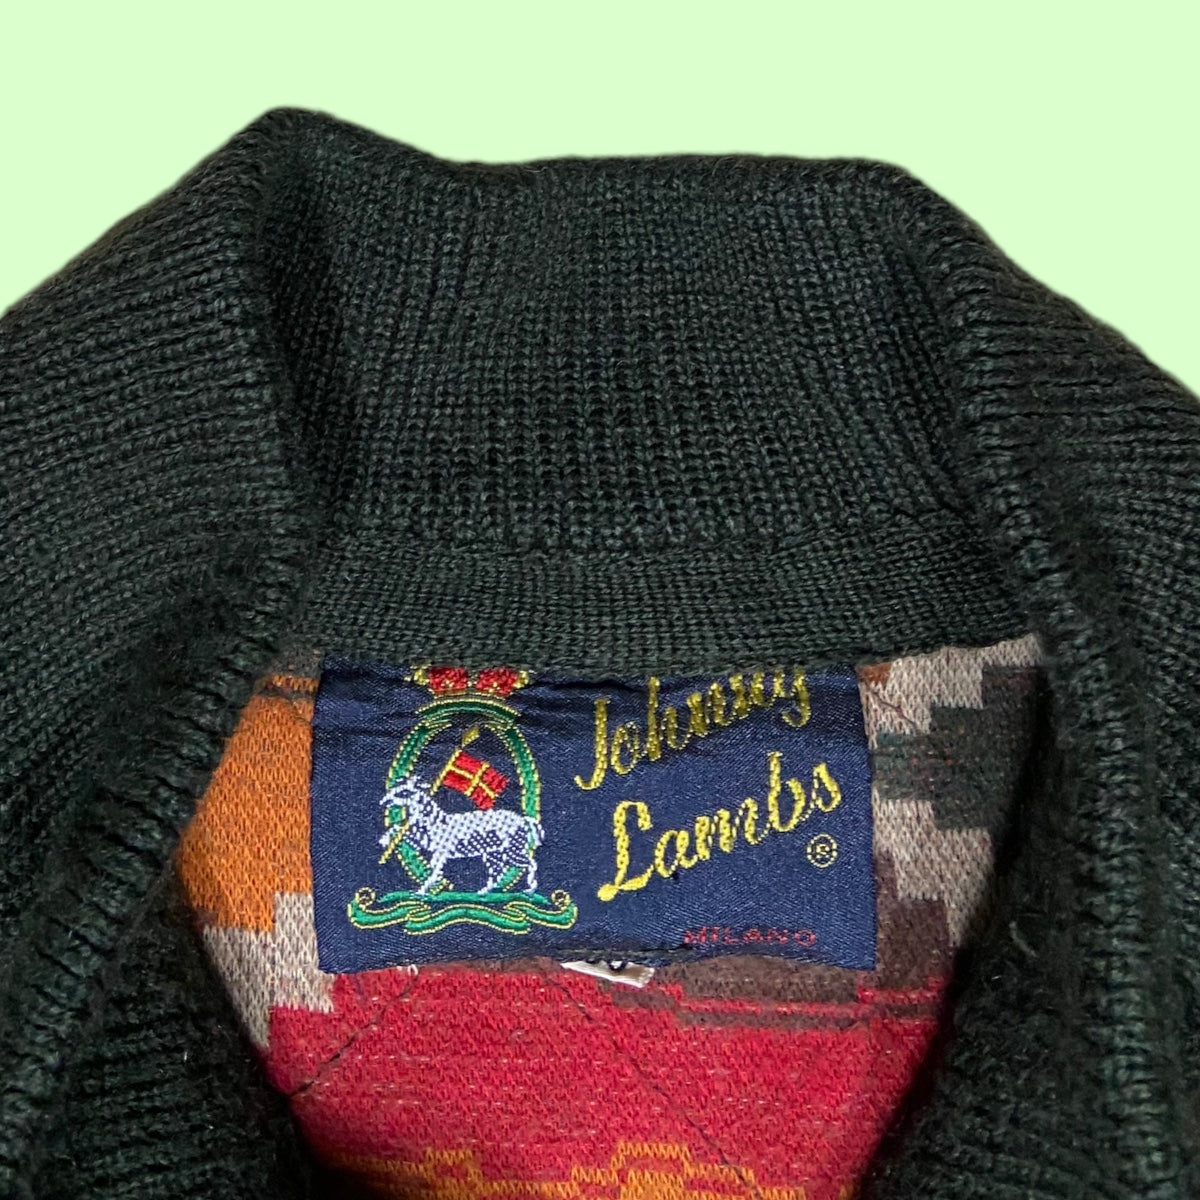 Vintage Johnny Lambs jacket - M